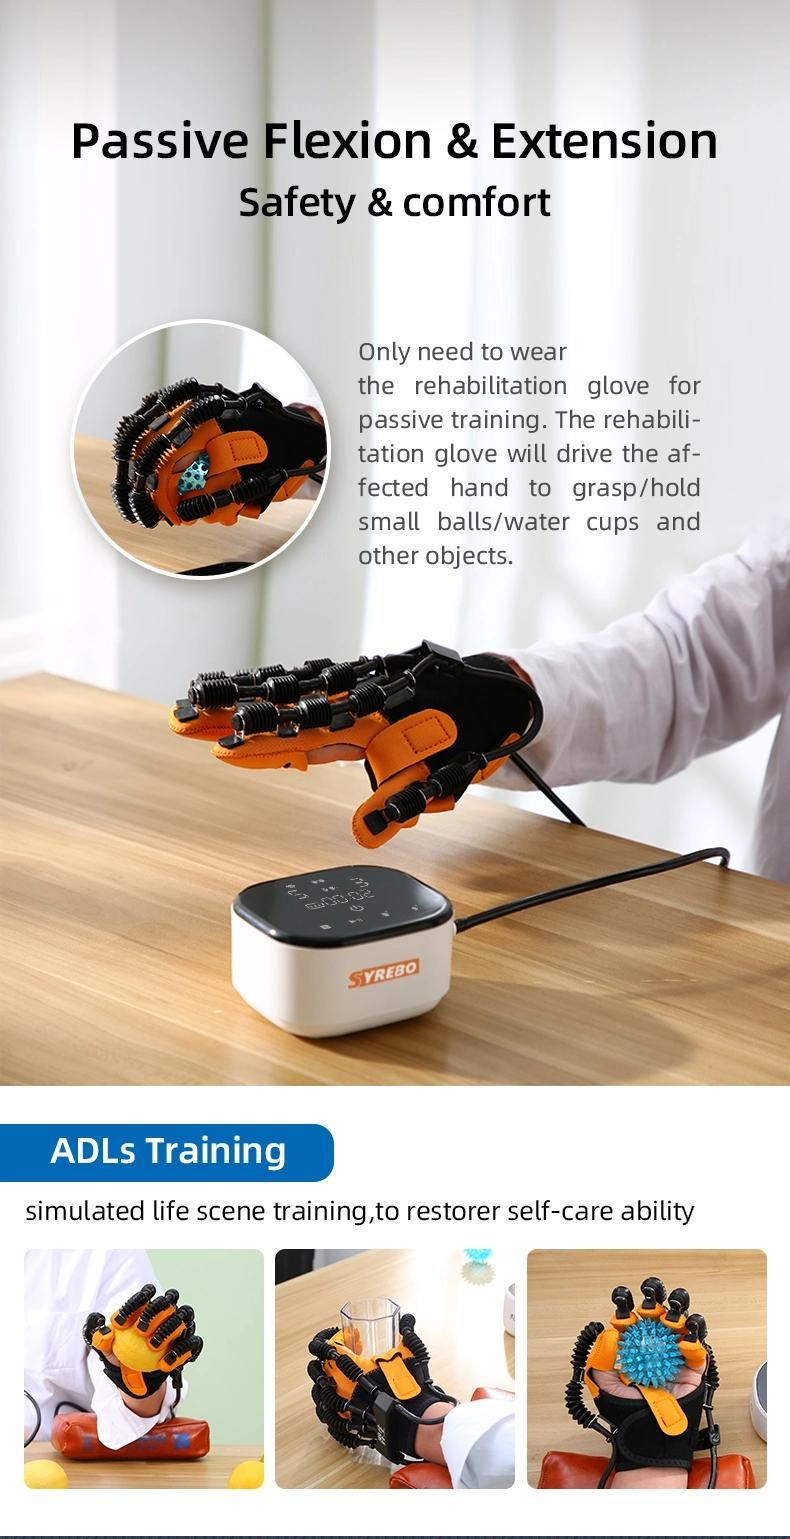 Factory Supply Finger Training Portable Rehabilitation Robot Gloves Cross Training Finger Pull up Hand Grips